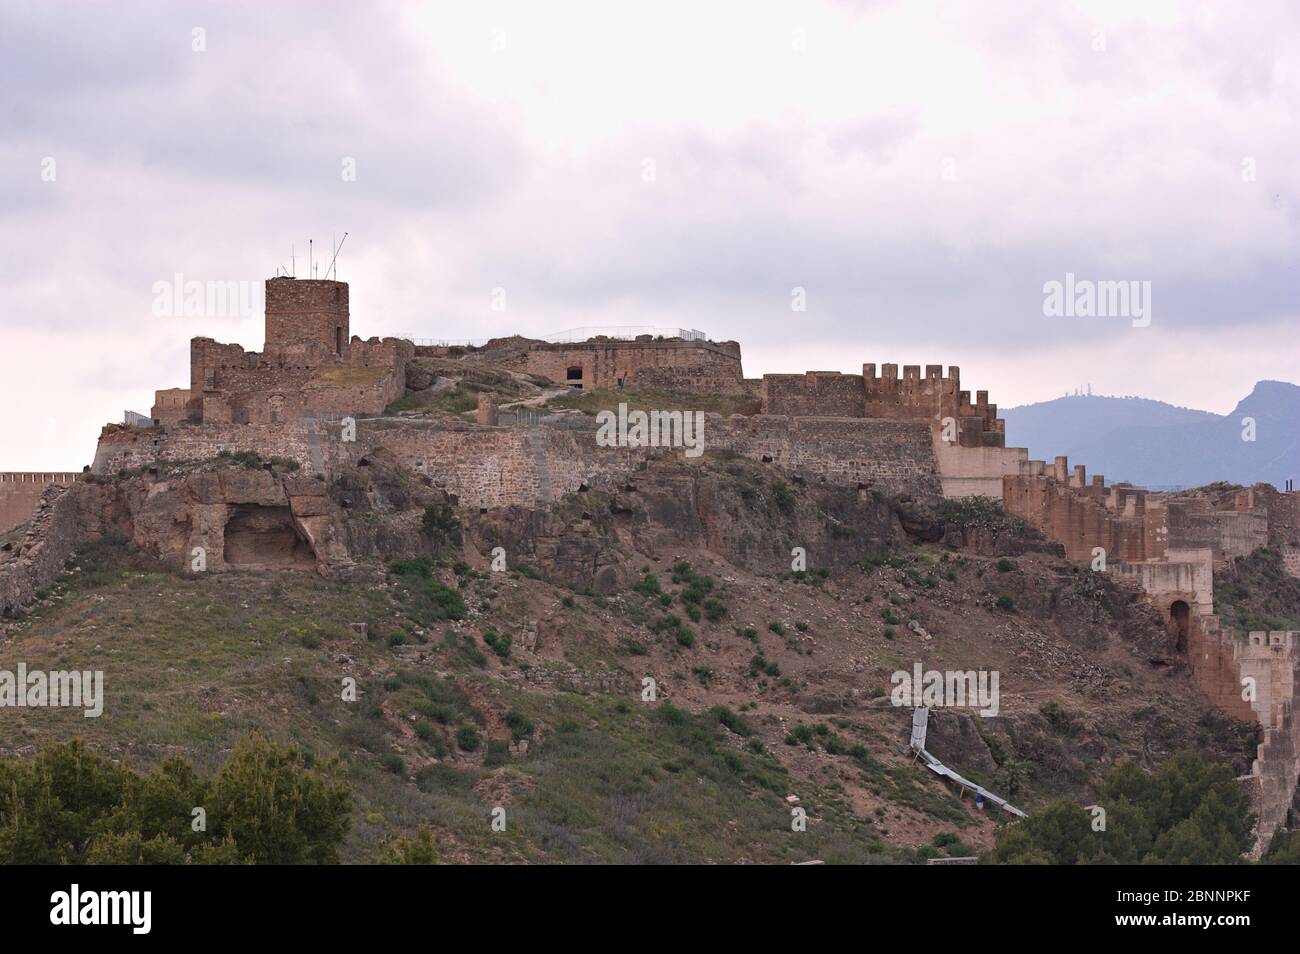 Vue d'ensemble du château de Sagunto, une forteresse située au sommet de la colline qui protège la ville de Sagunto, Valence. Banque D'Images